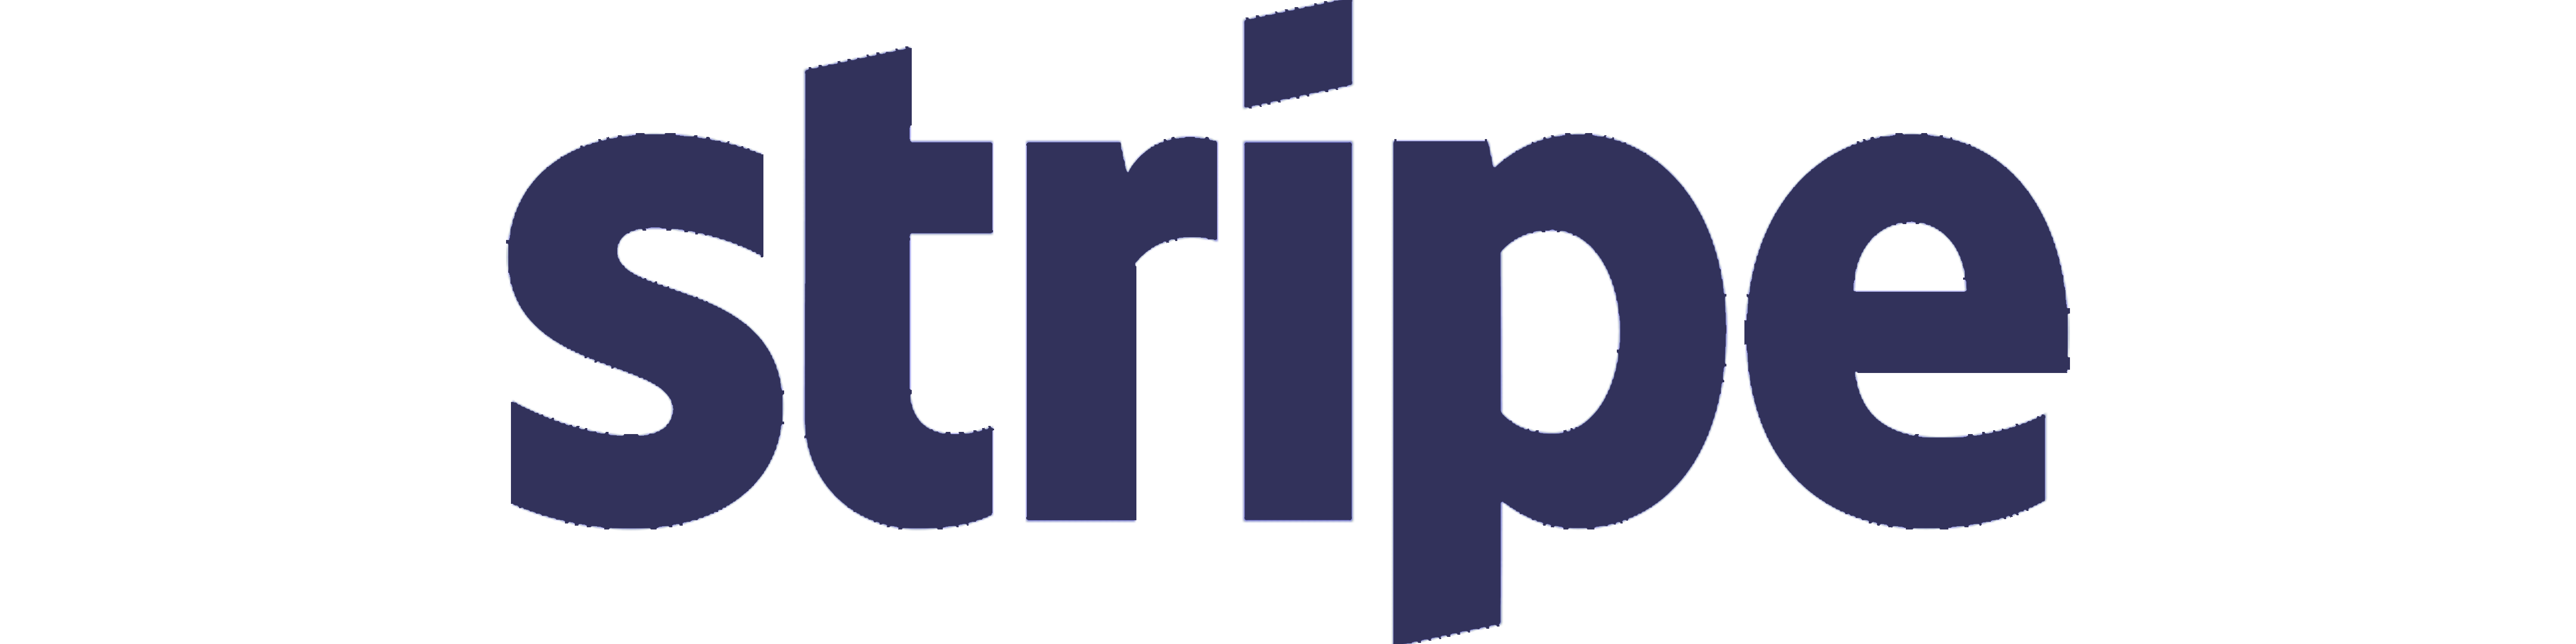 STRIPE logo